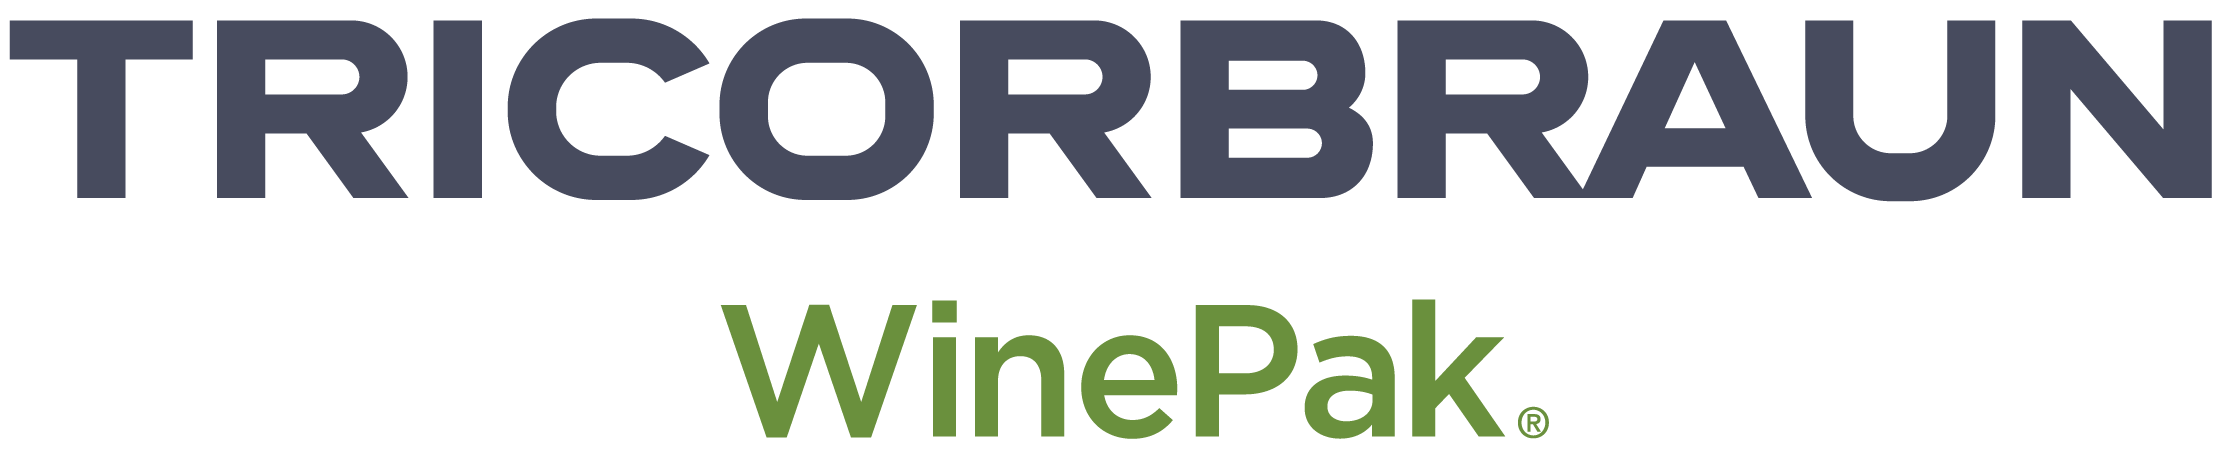 Logo-TricorBraun-WinePak.png